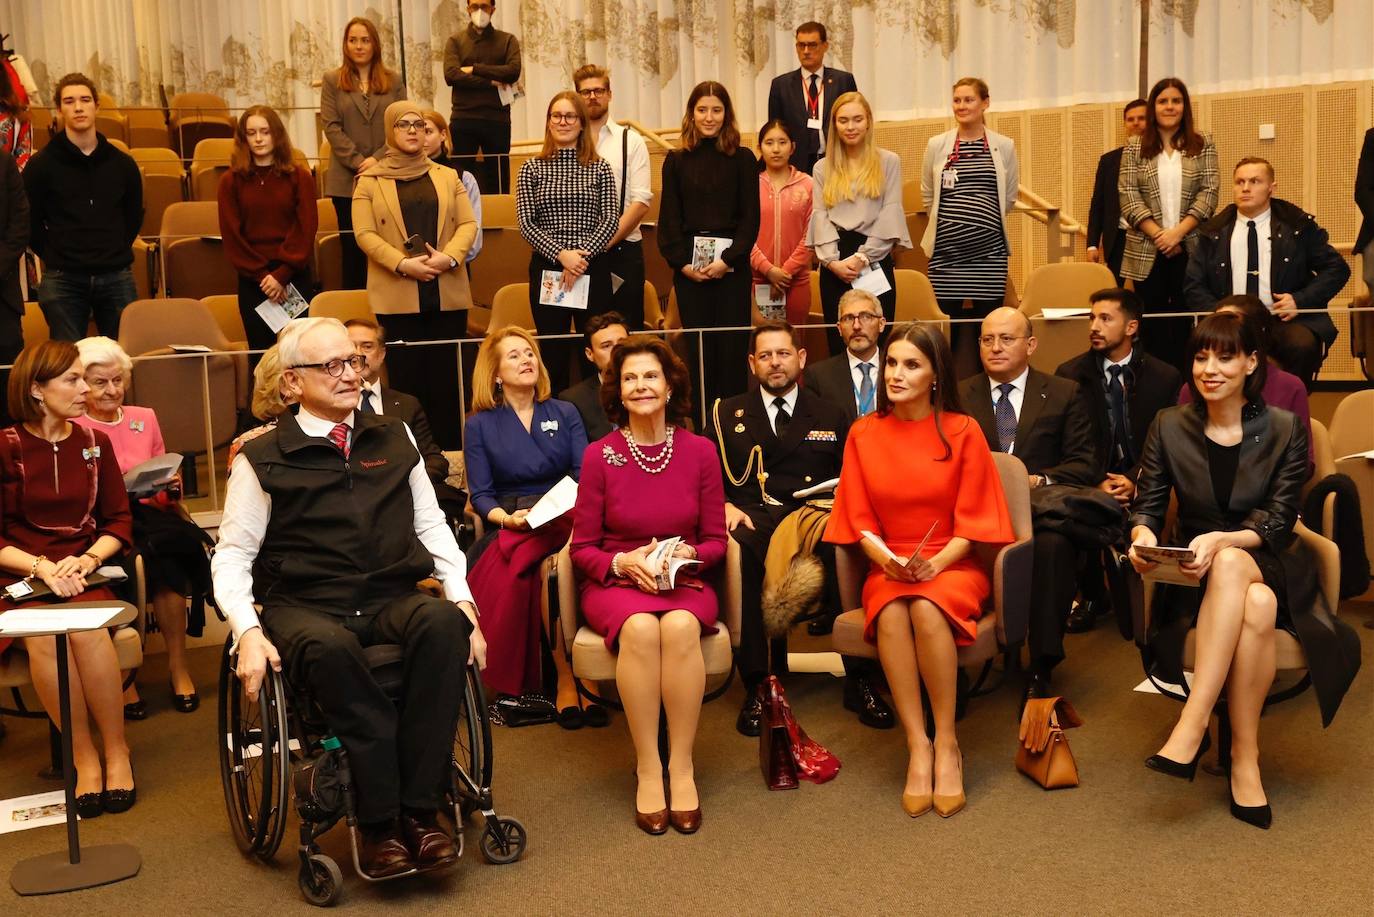 La reina Letizia, acompañada por la reina Silvia de Suecia, ha visitado el Instituto Karolinska, el mayor centro académico de investigación médica de Suecia